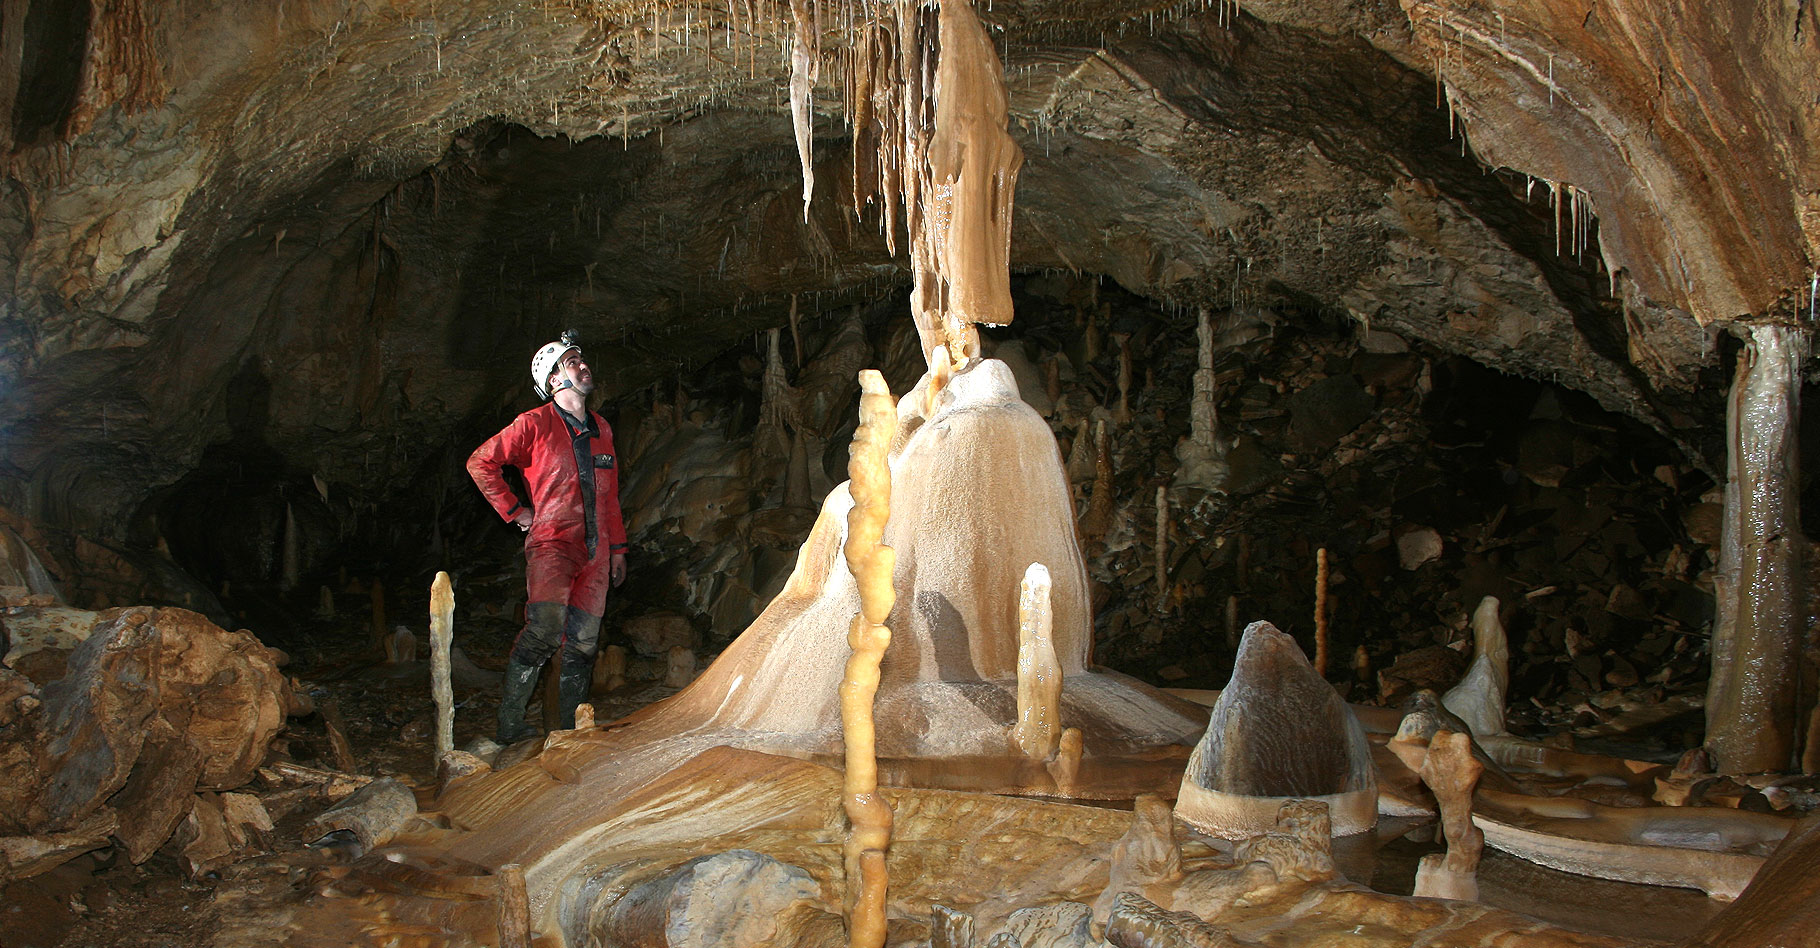 Formation des grottes : karst et érosion karstique